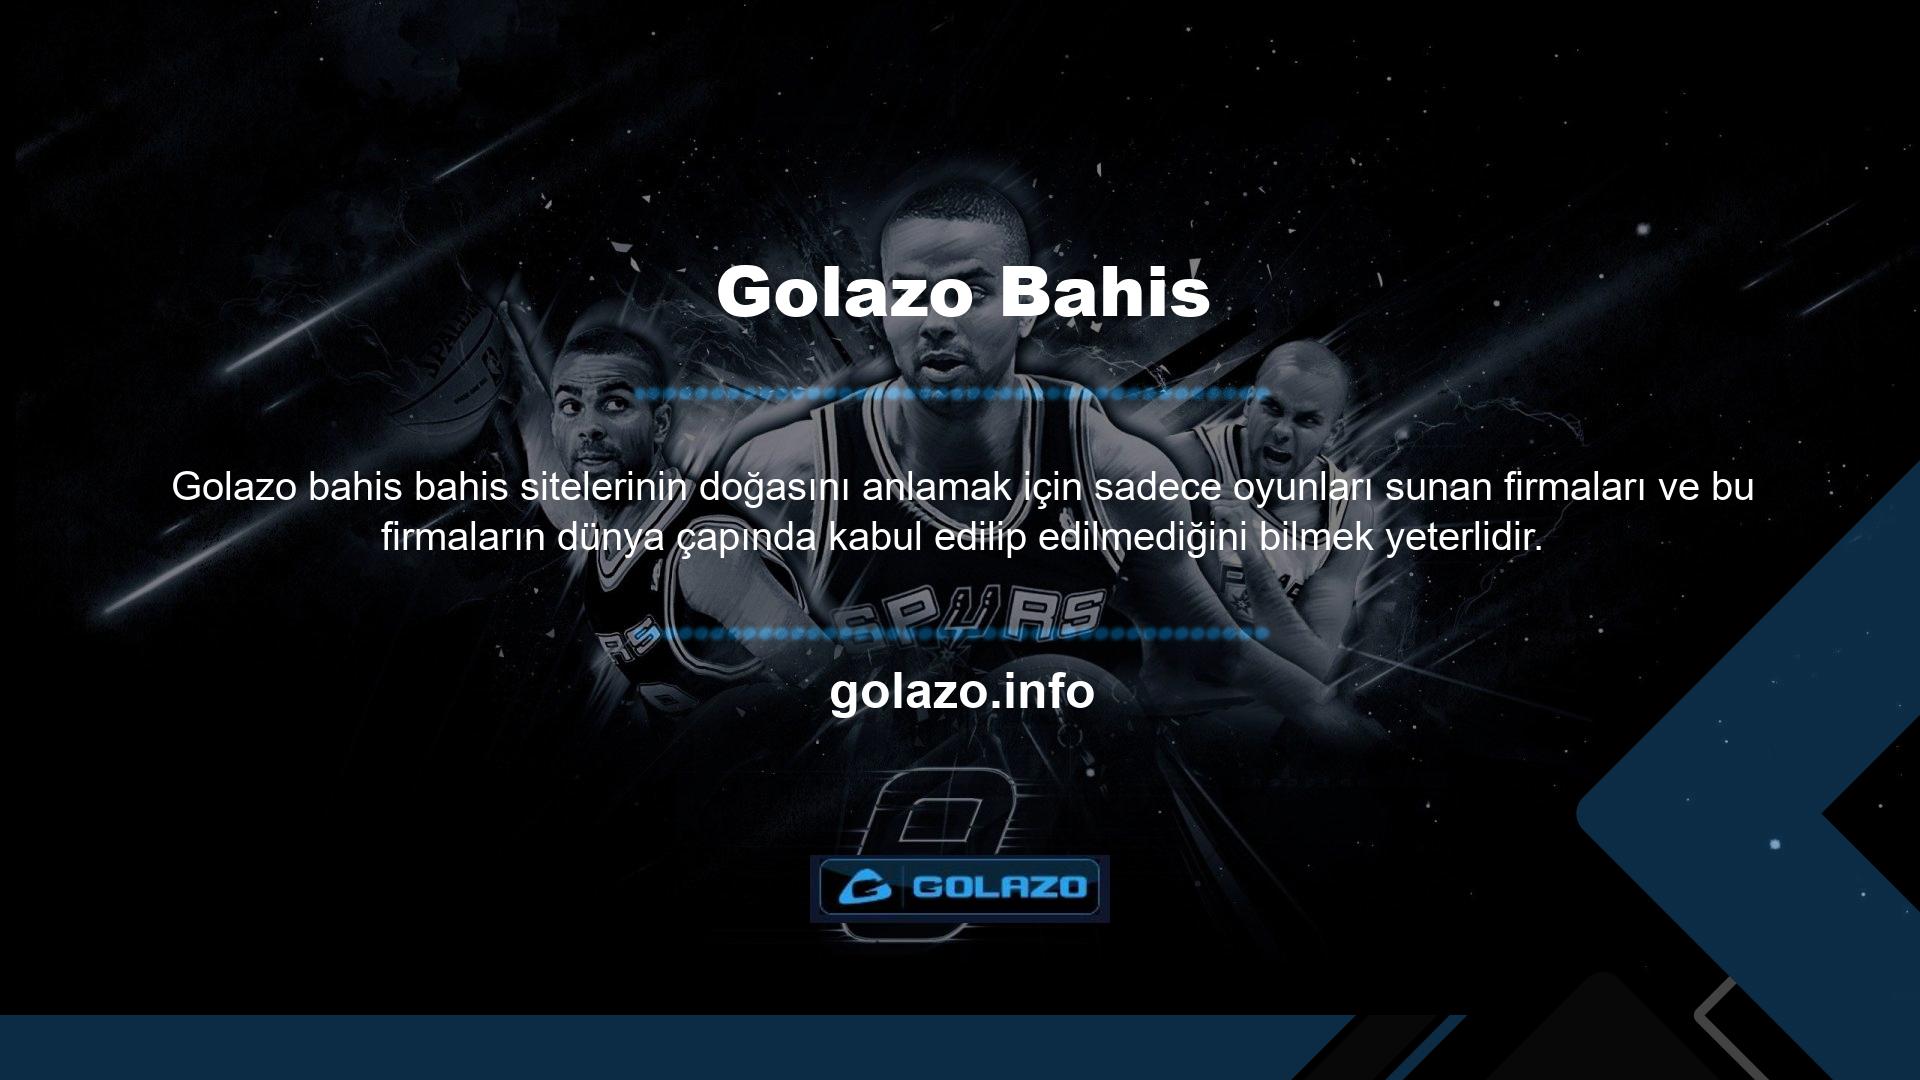 Golazo siteleriyle çalışan oyun sağlayıcıların sayısını ve kalitesini, oyunları nasıl güvenilir bir şekilde teslim ettiklerini ve Golazo Pokerin üyelerine ne kadar ödediğini görün